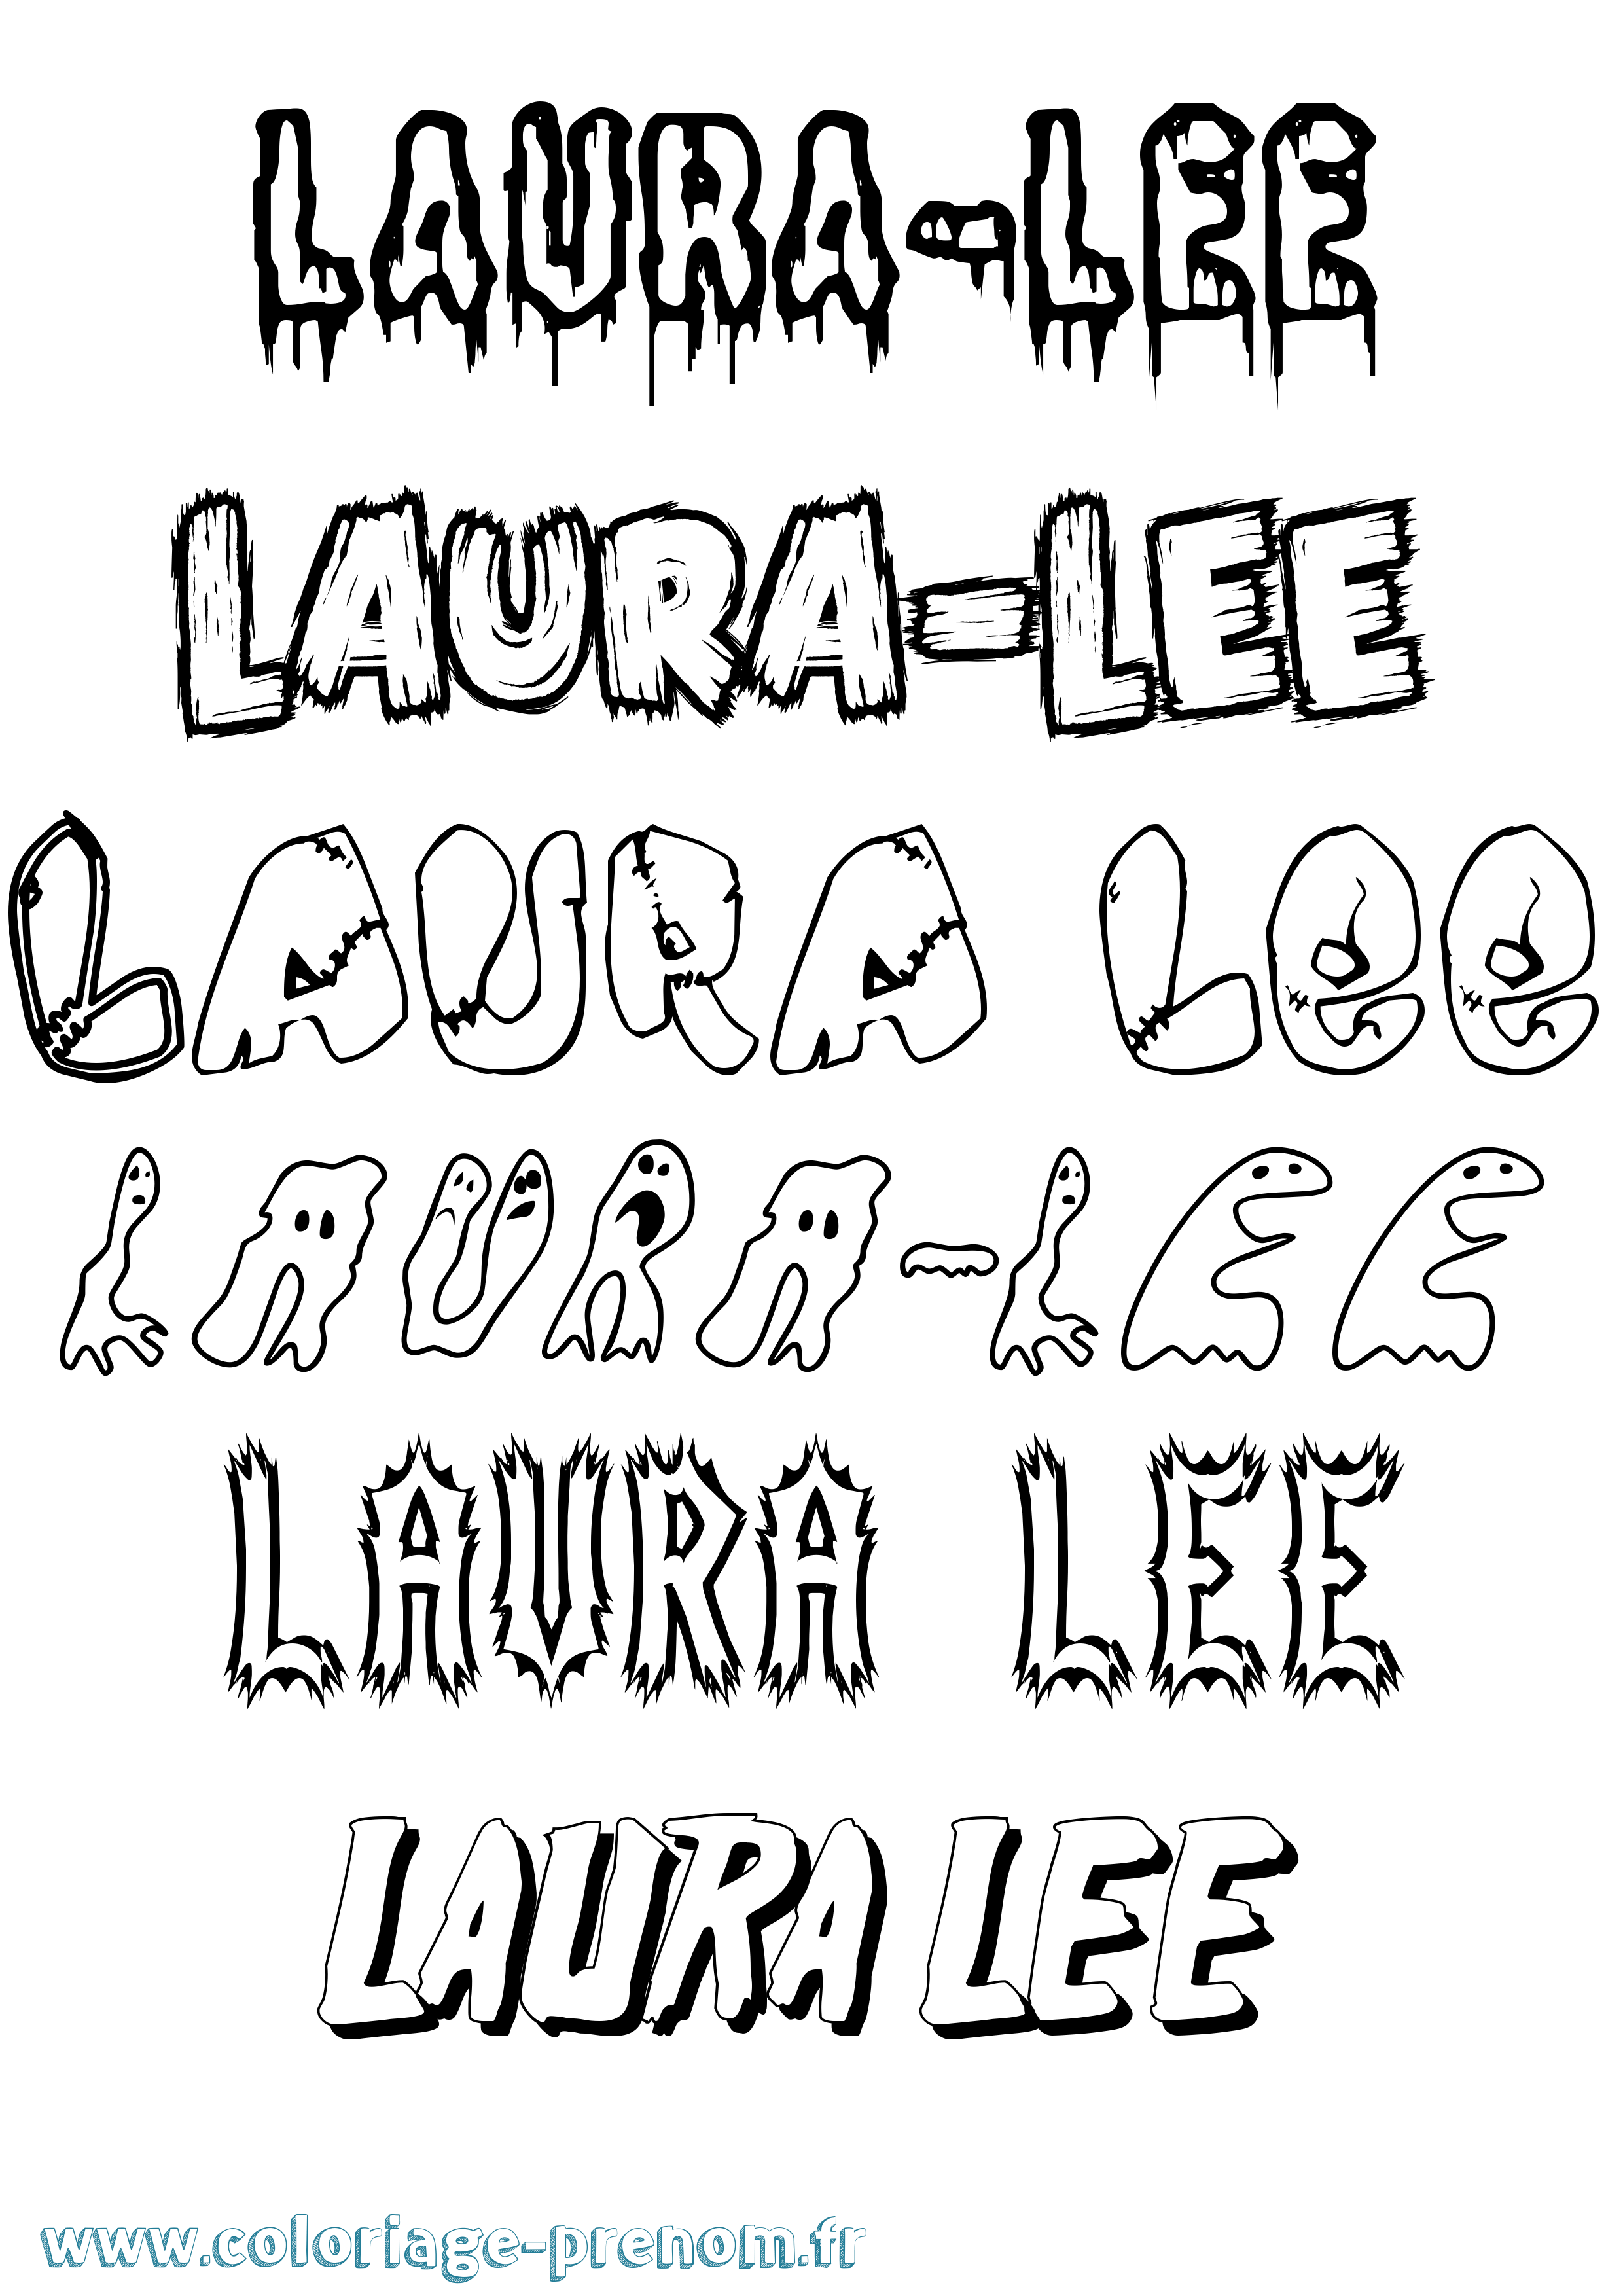 Coloriage prénom Laura-Lee Frisson